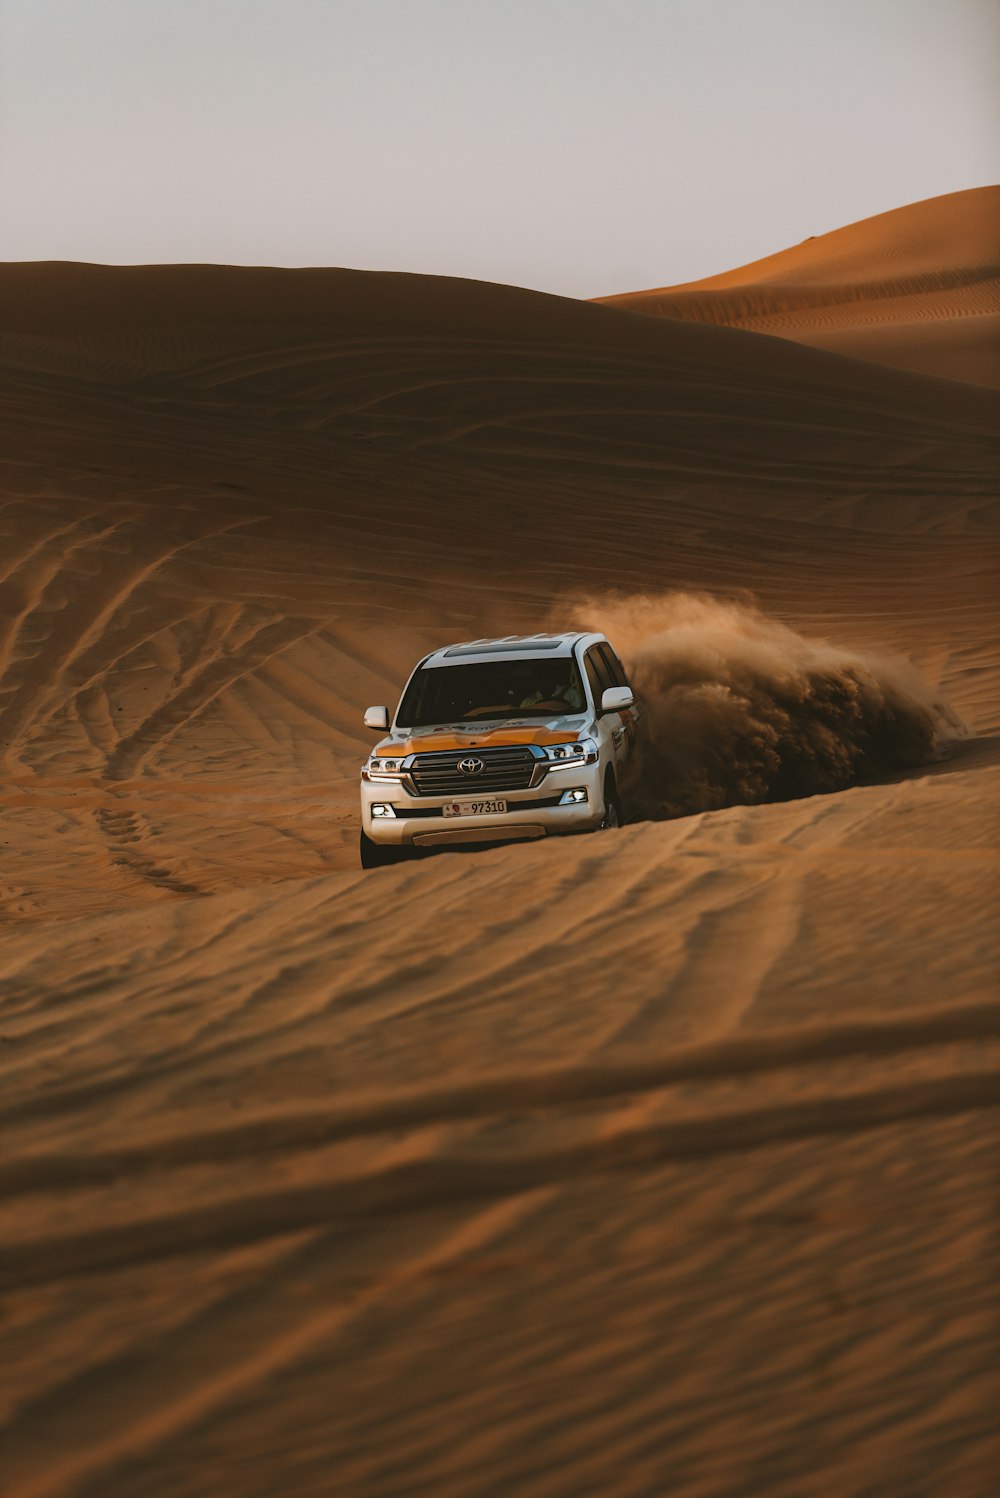 Weißes Chevrolet-Auto in der Wüste